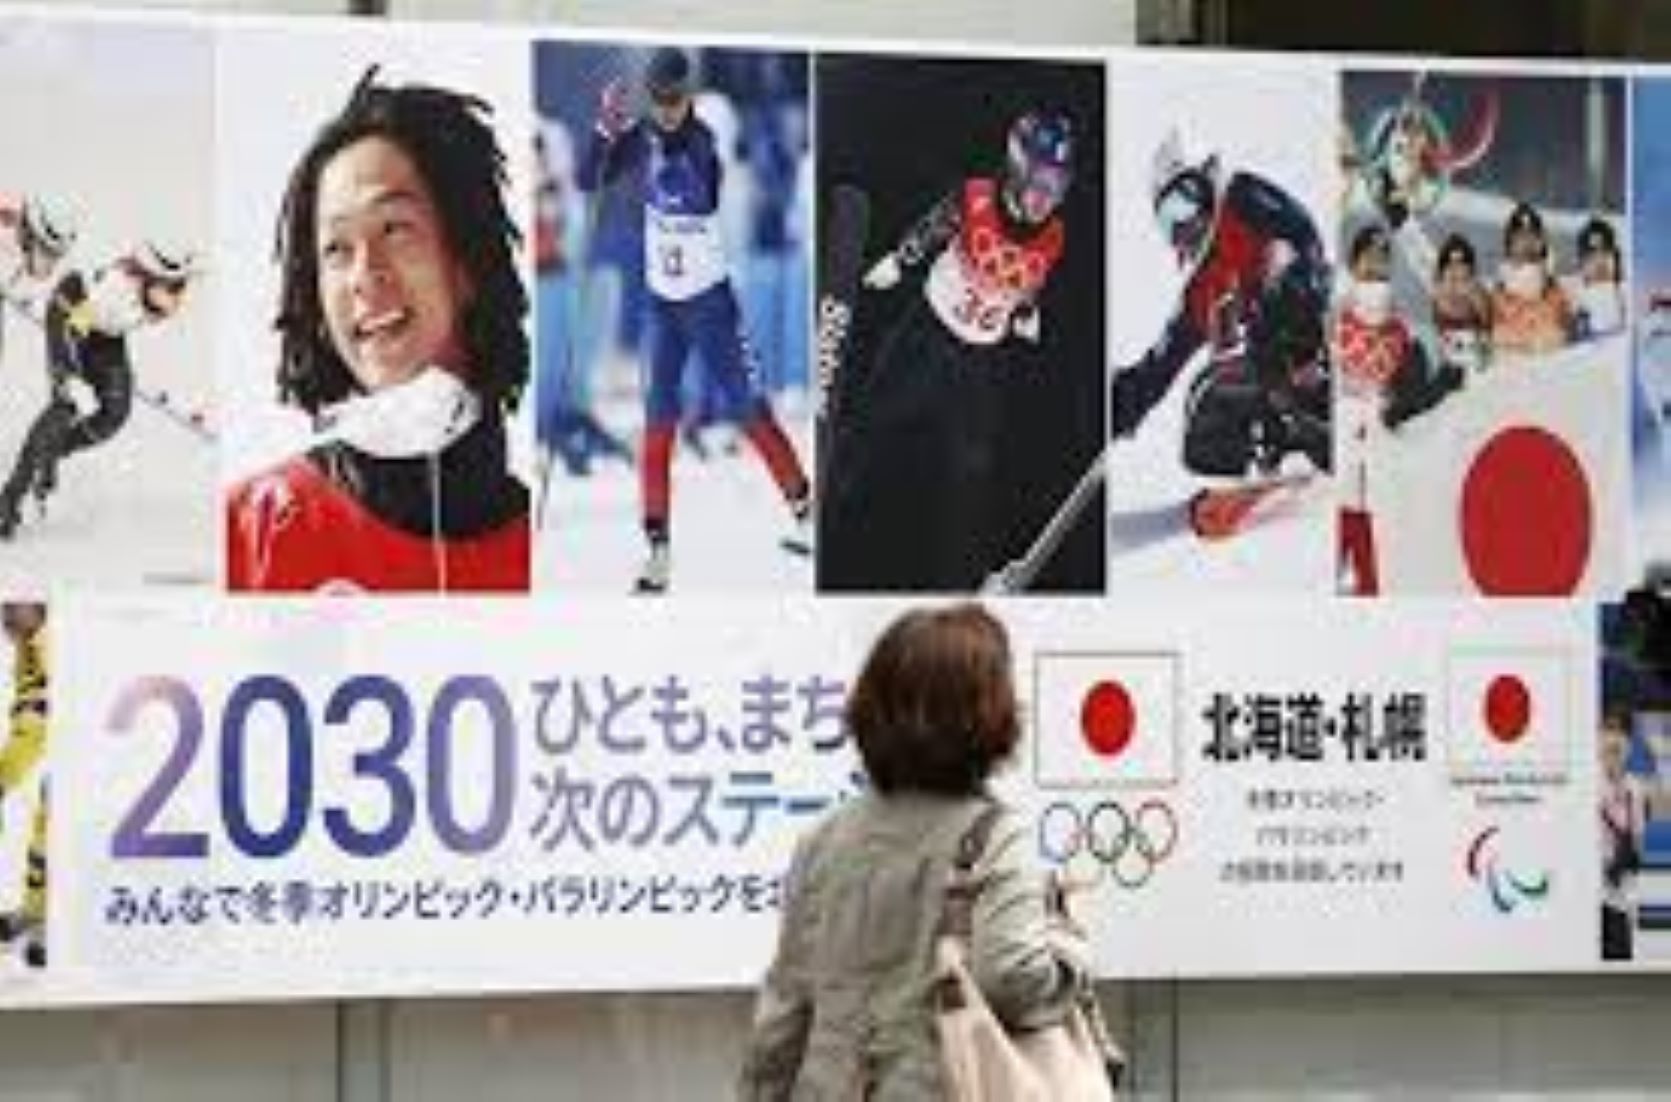 Japan’s Sapporo To Abandon Bid To Host 2030 Winter Olympics